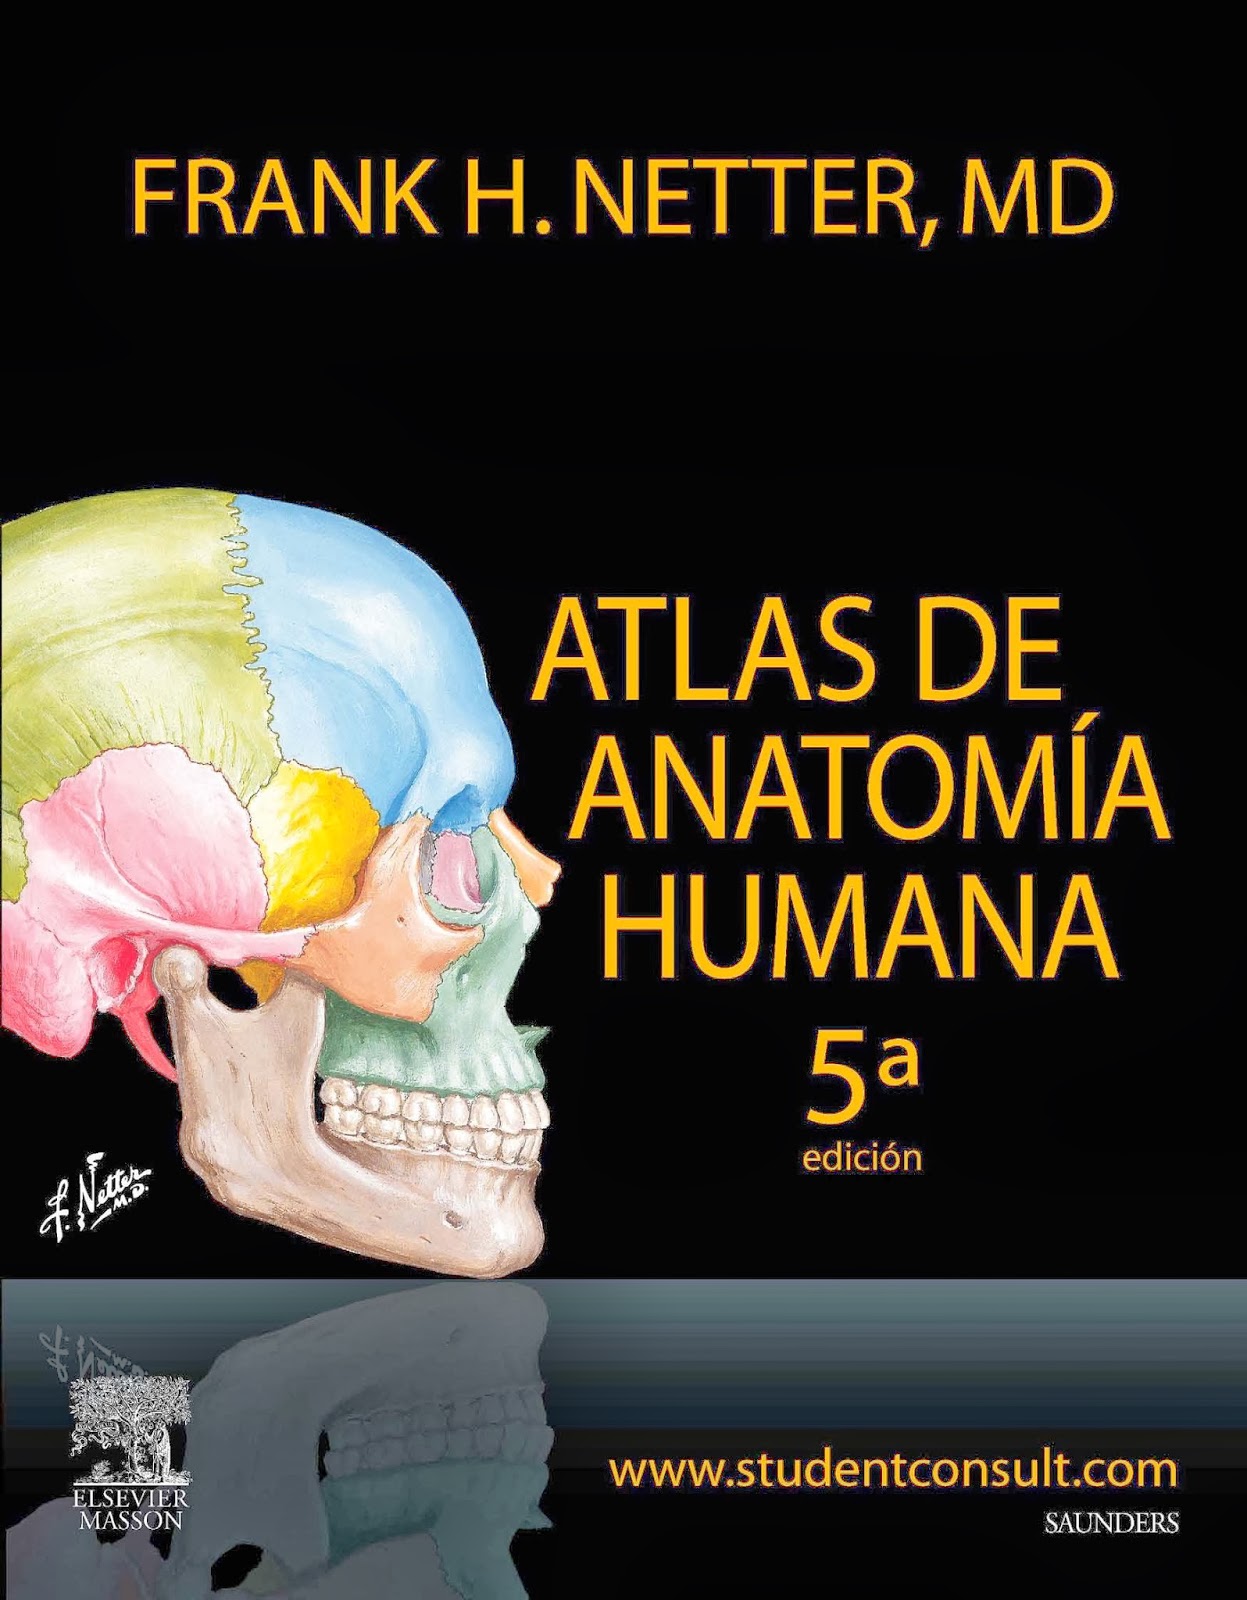 Anatomia humana psicologia